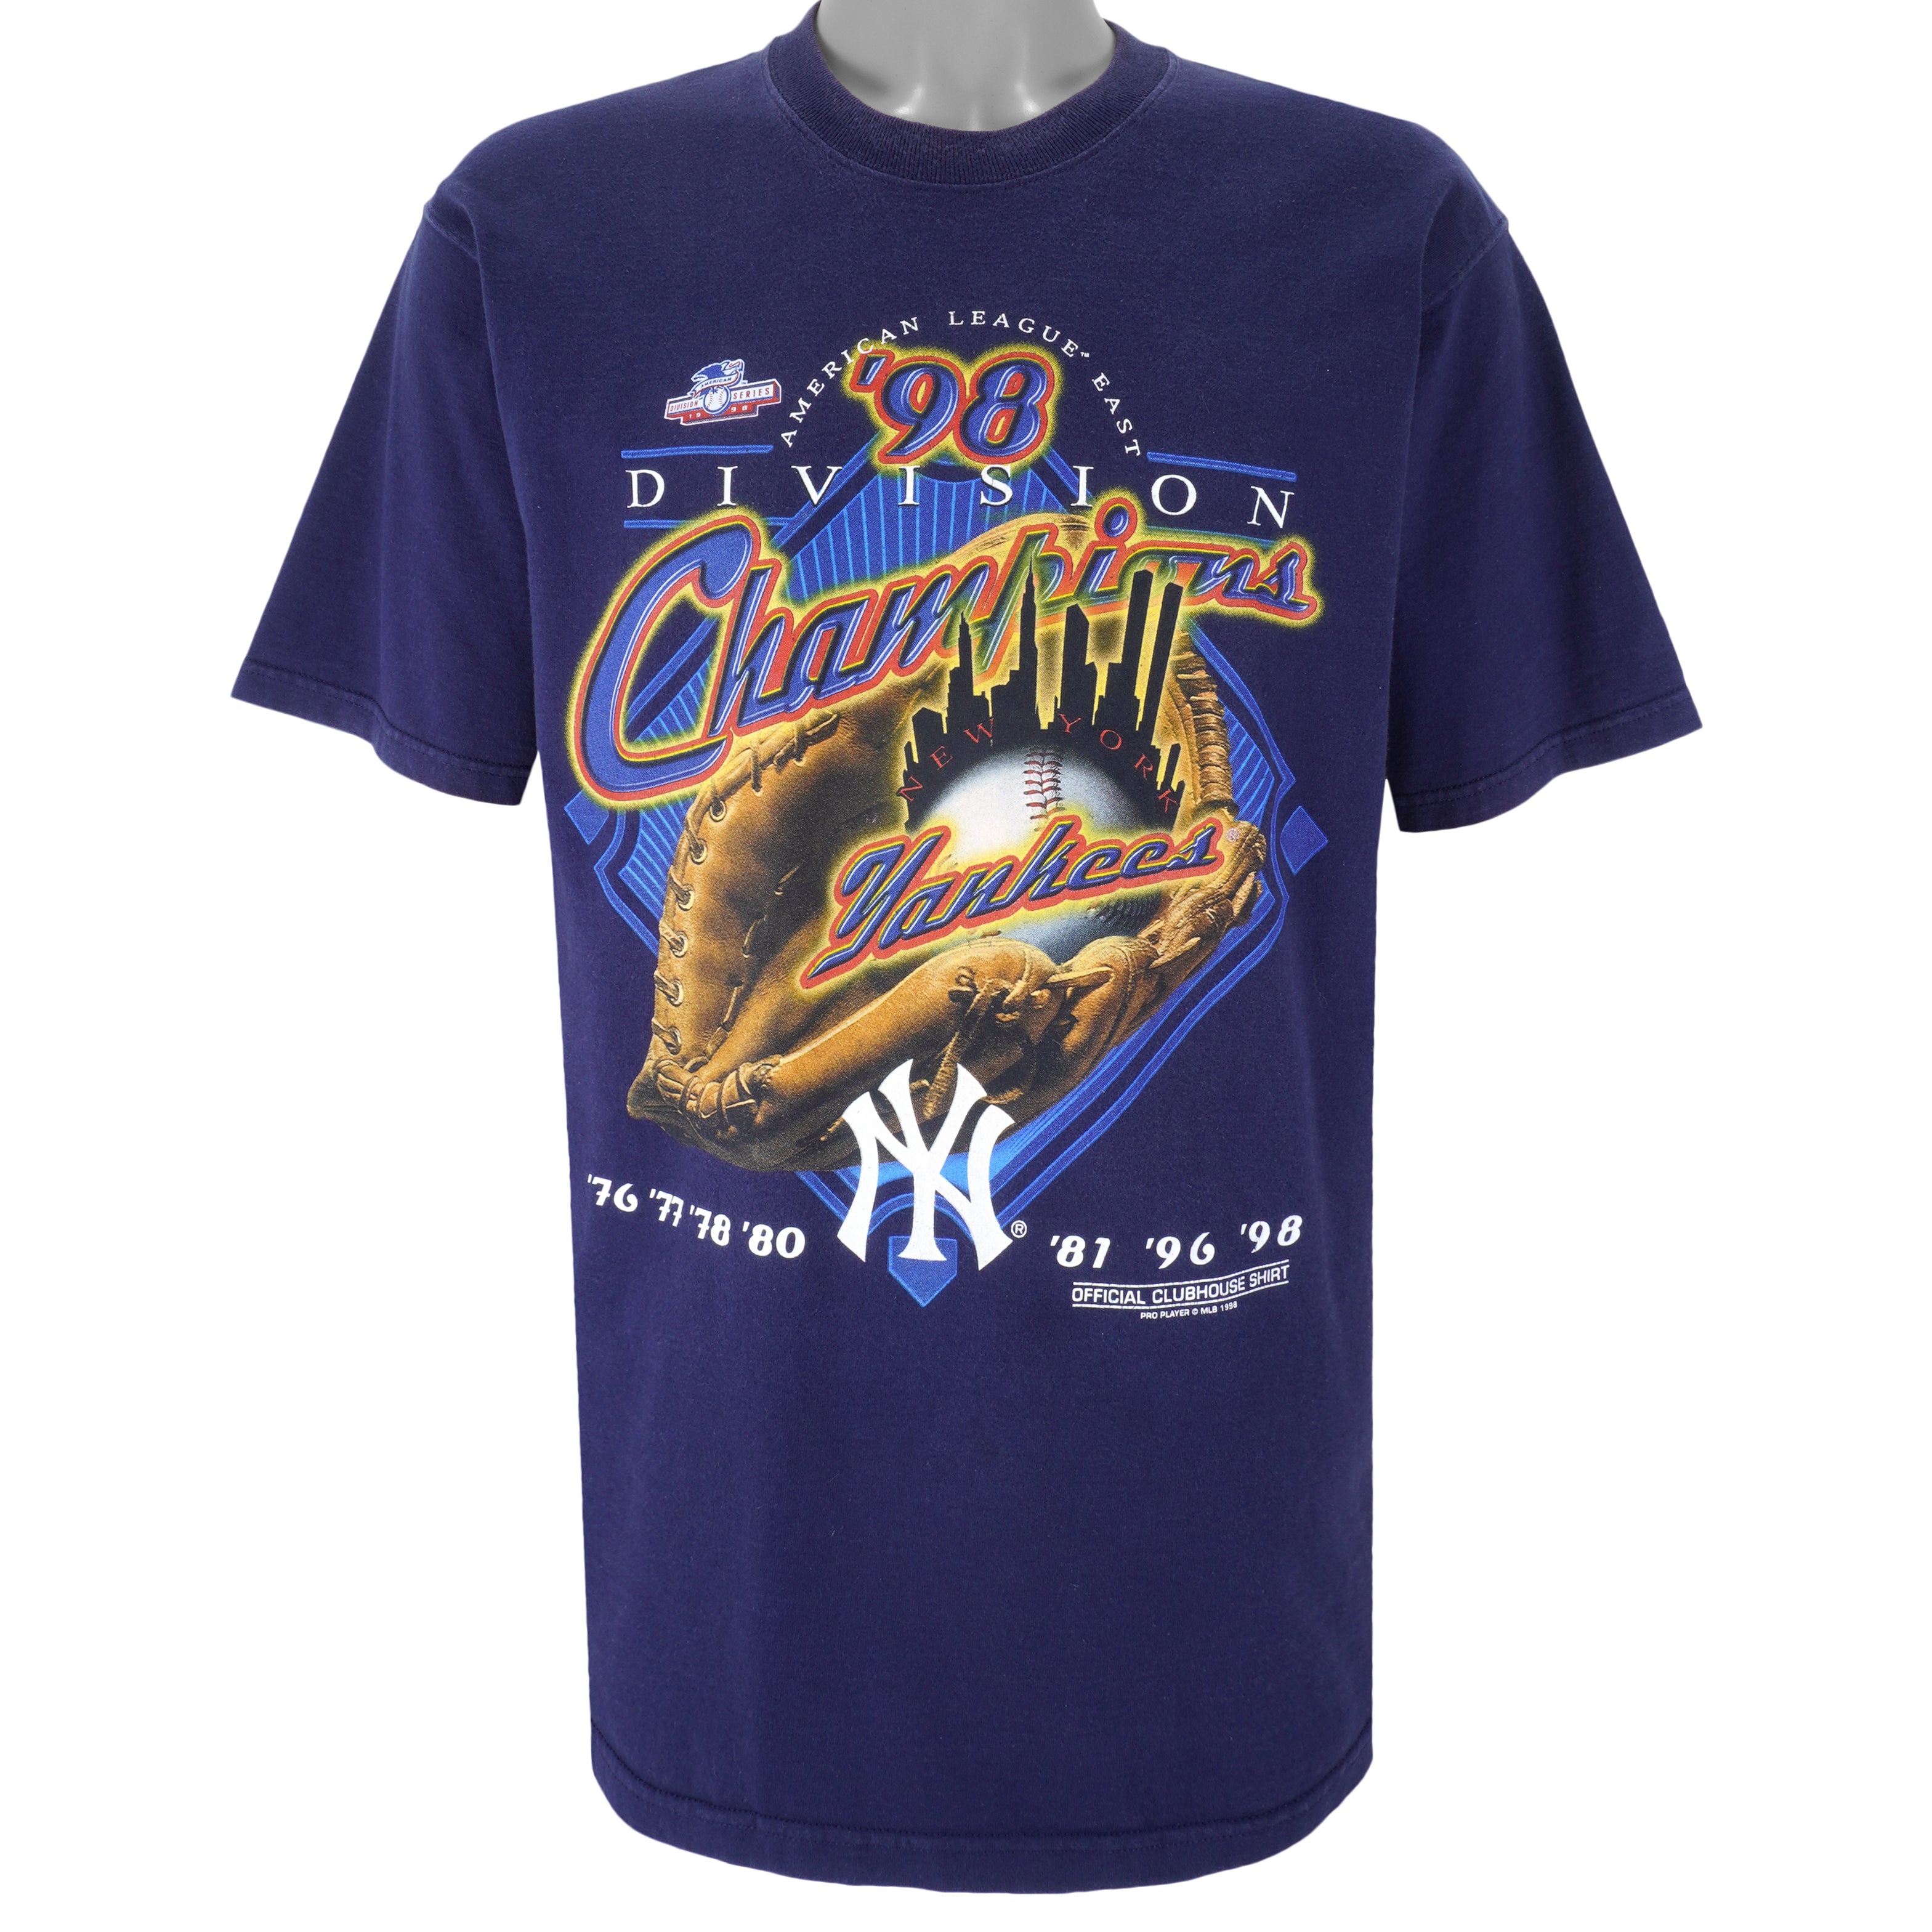 New York Yankees World Series T-Shirt